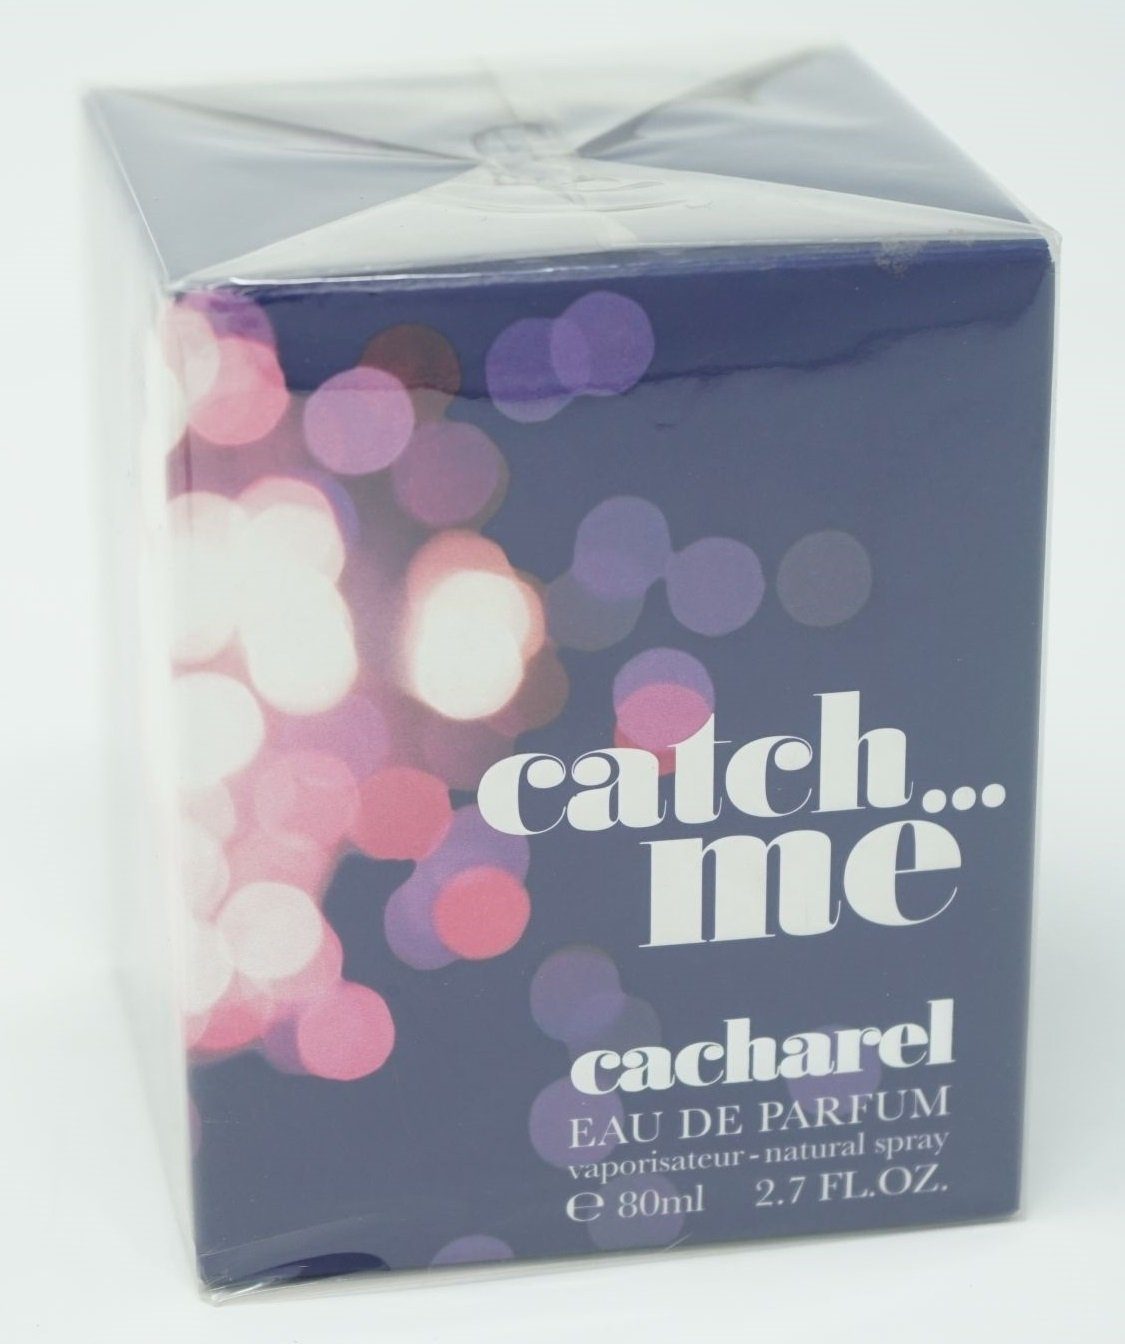 CACHAREL Eau de Parfum Cacharel Me 80 de Eau ml Parfum Catch Spray